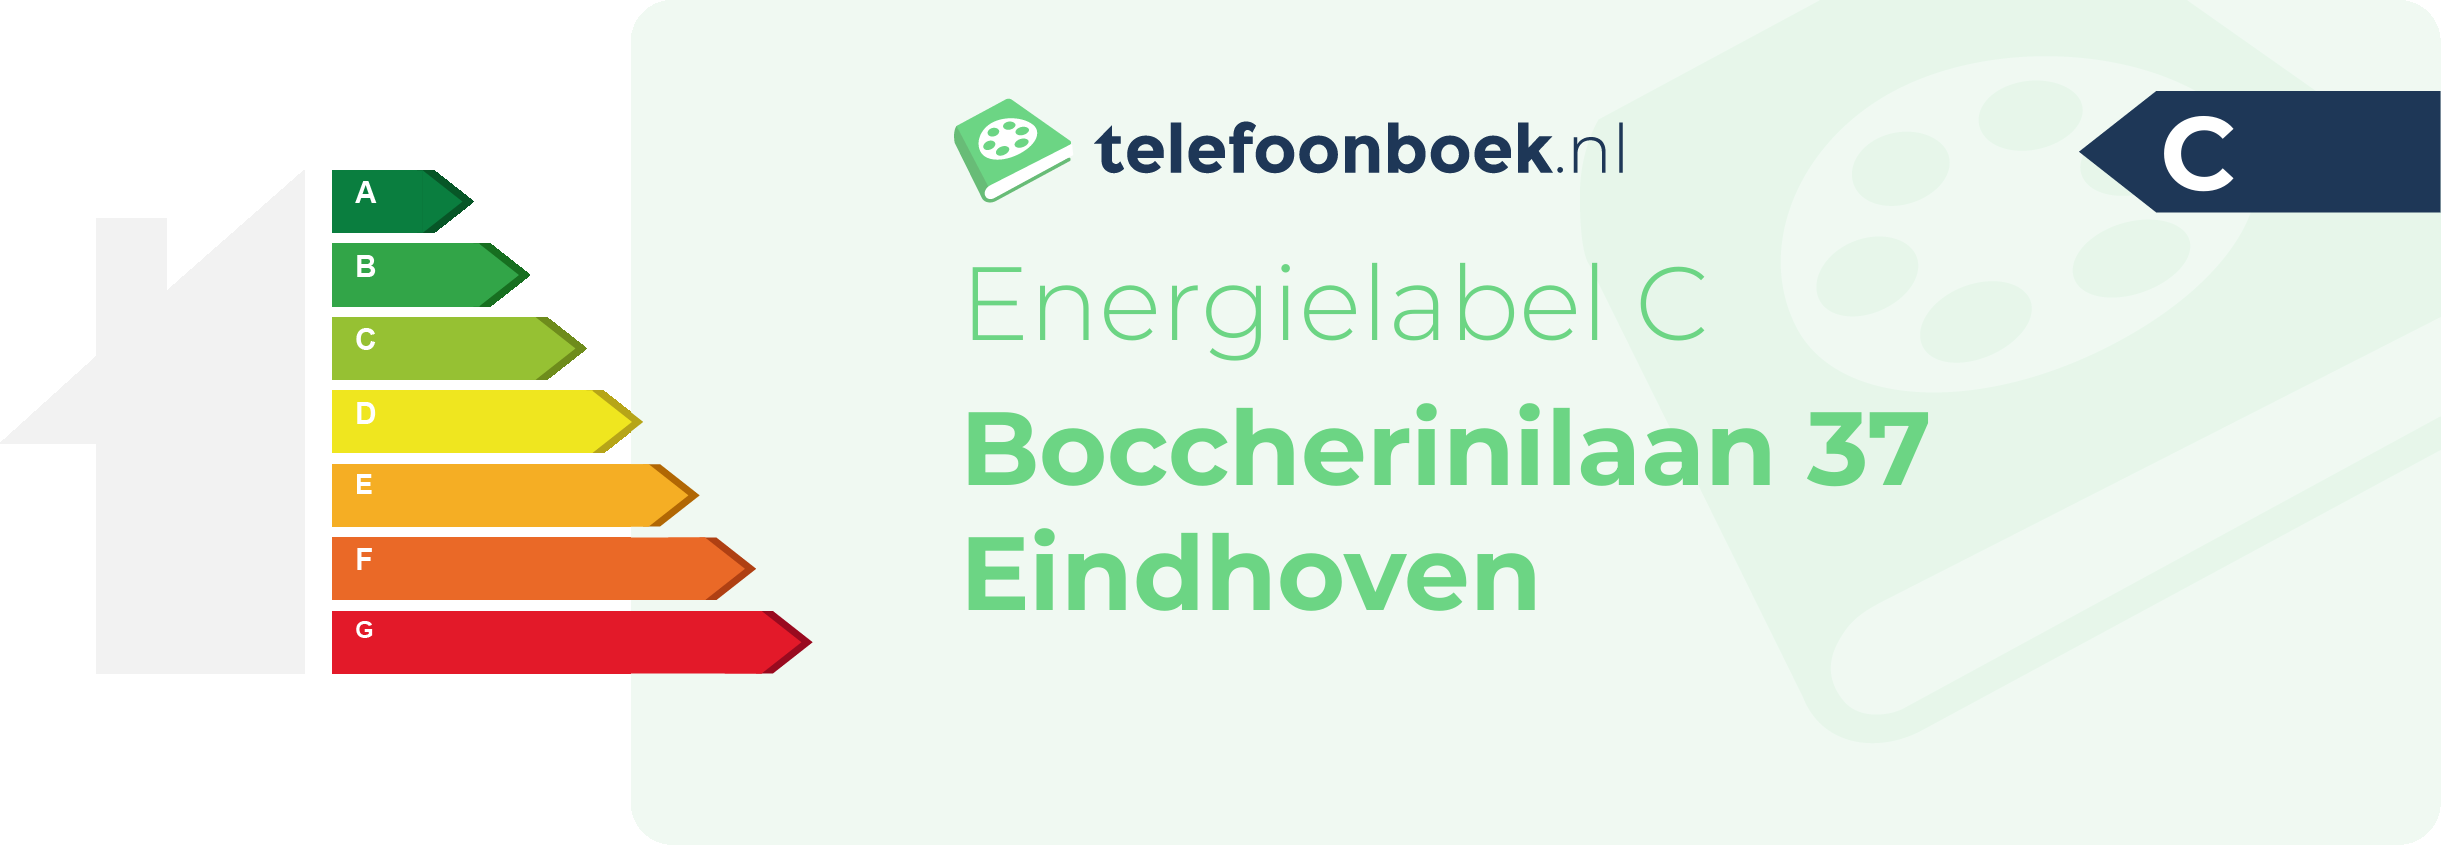 Energielabel Boccherinilaan 37 Eindhoven